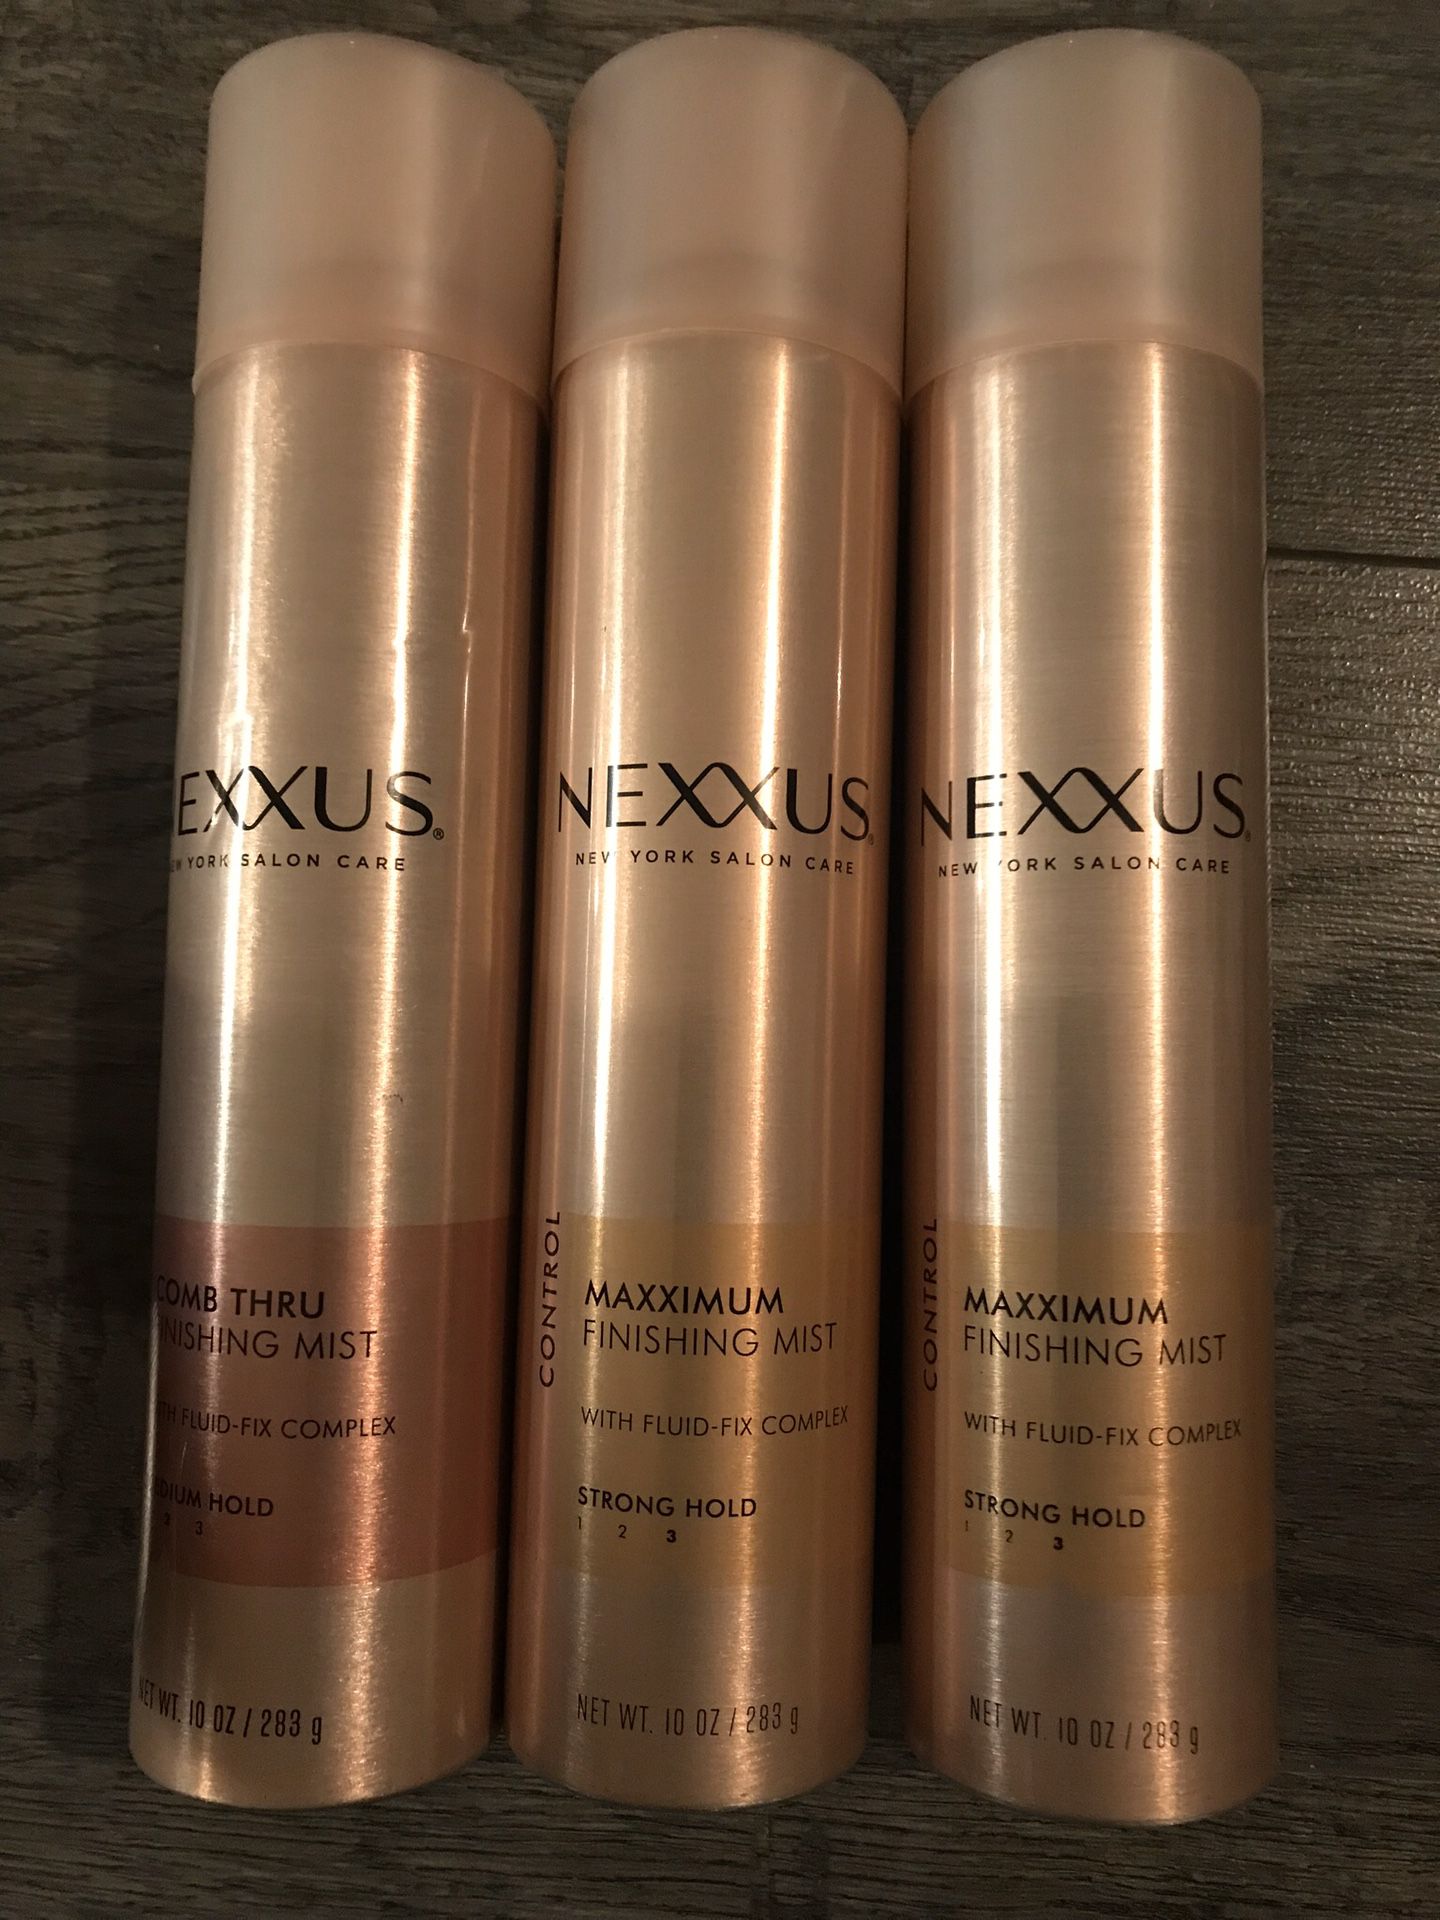 Nexxus finishing mist $7 each